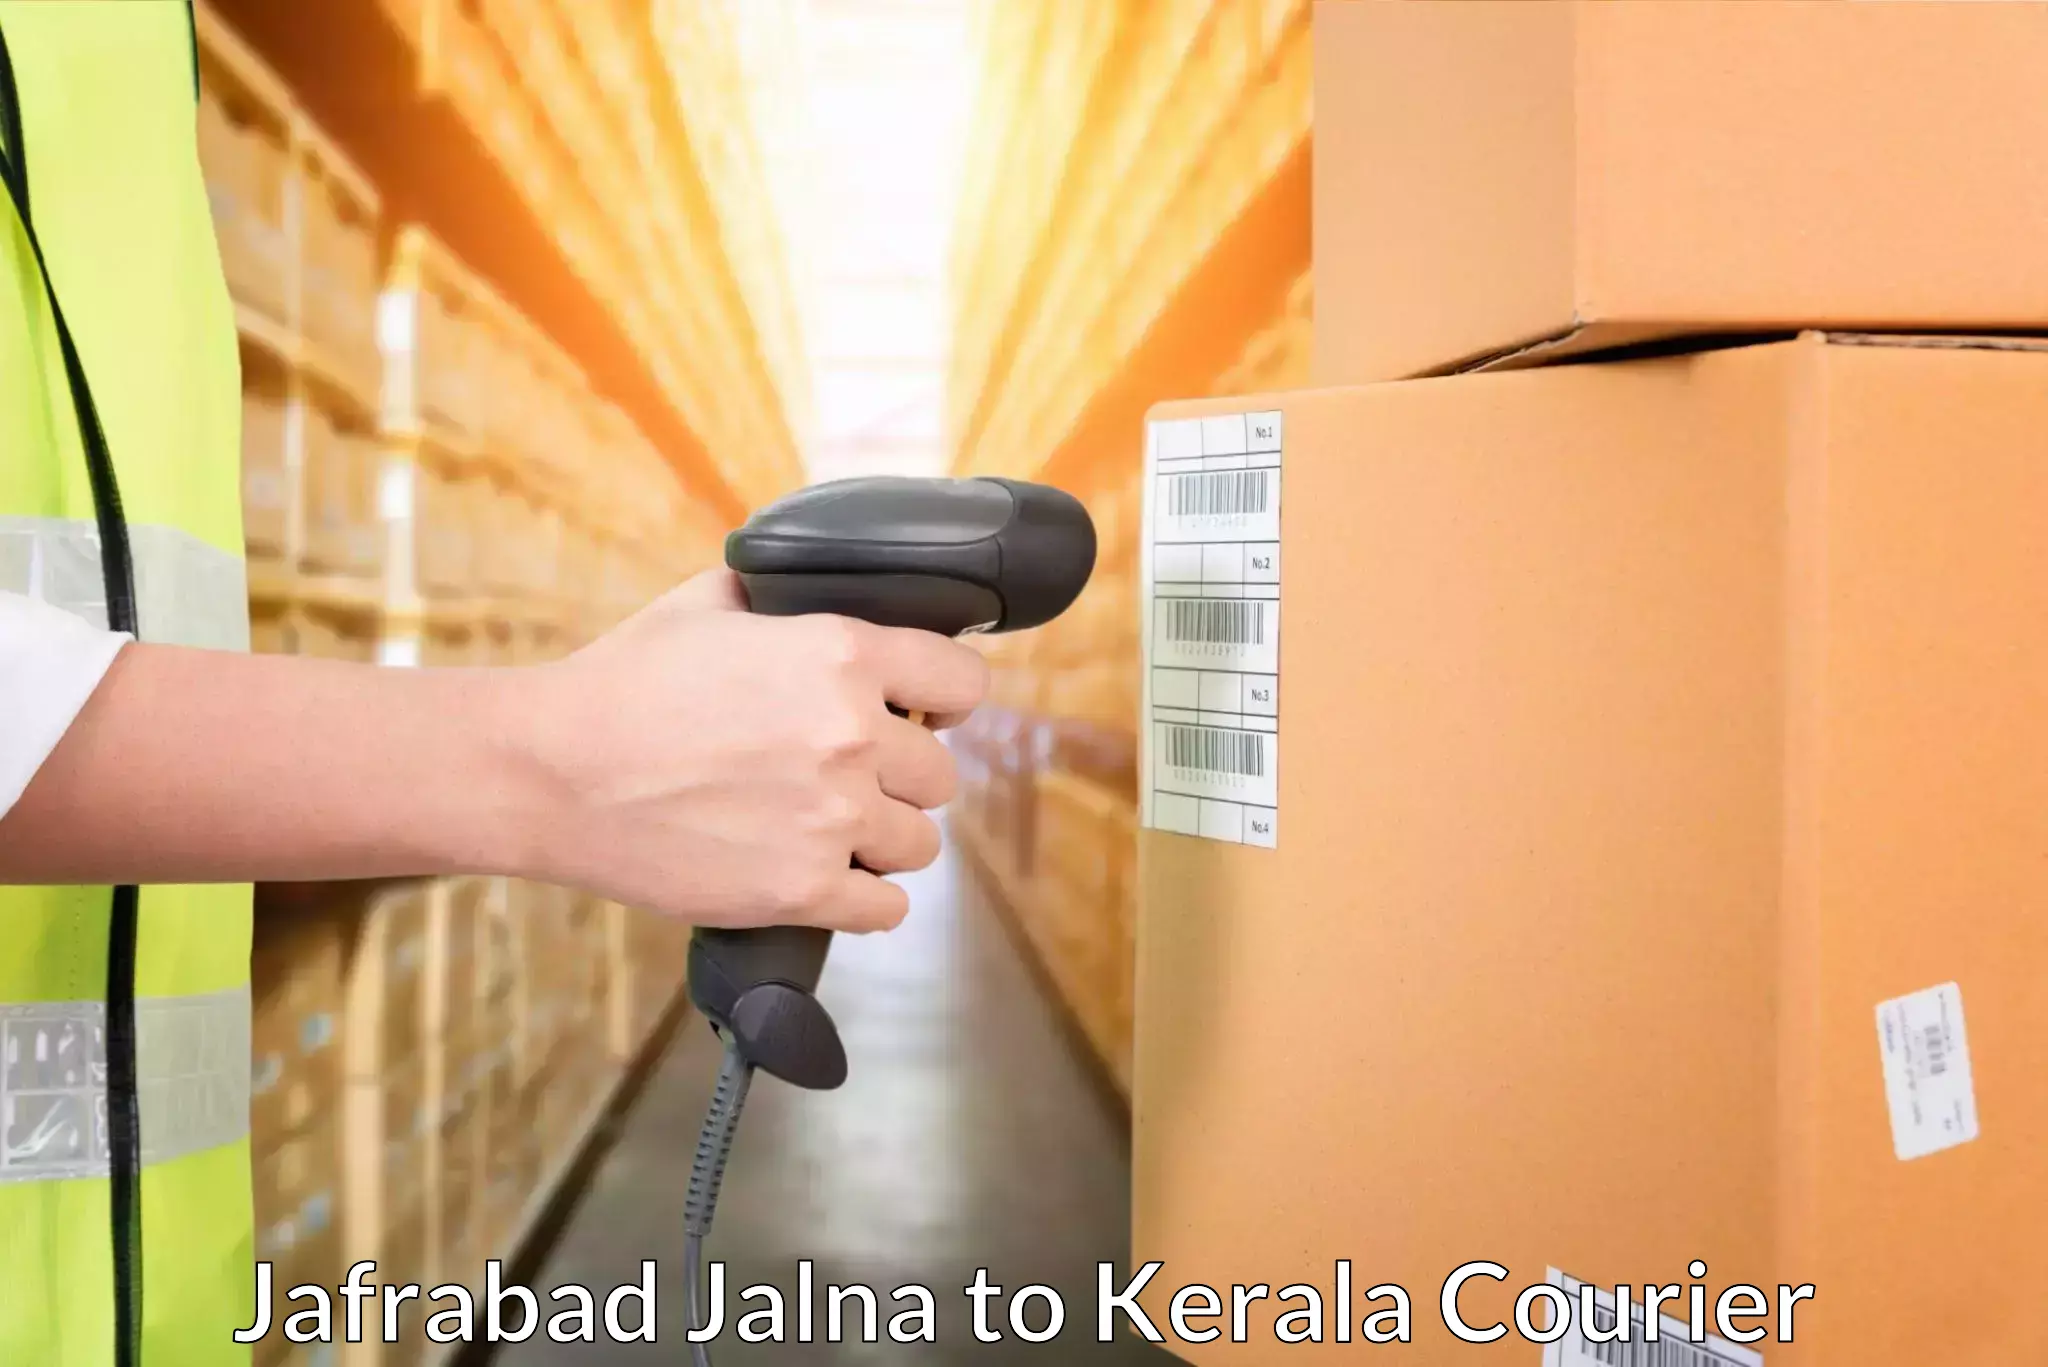 Nationwide shipping services Jafrabad Jalna to Irinjalakuda